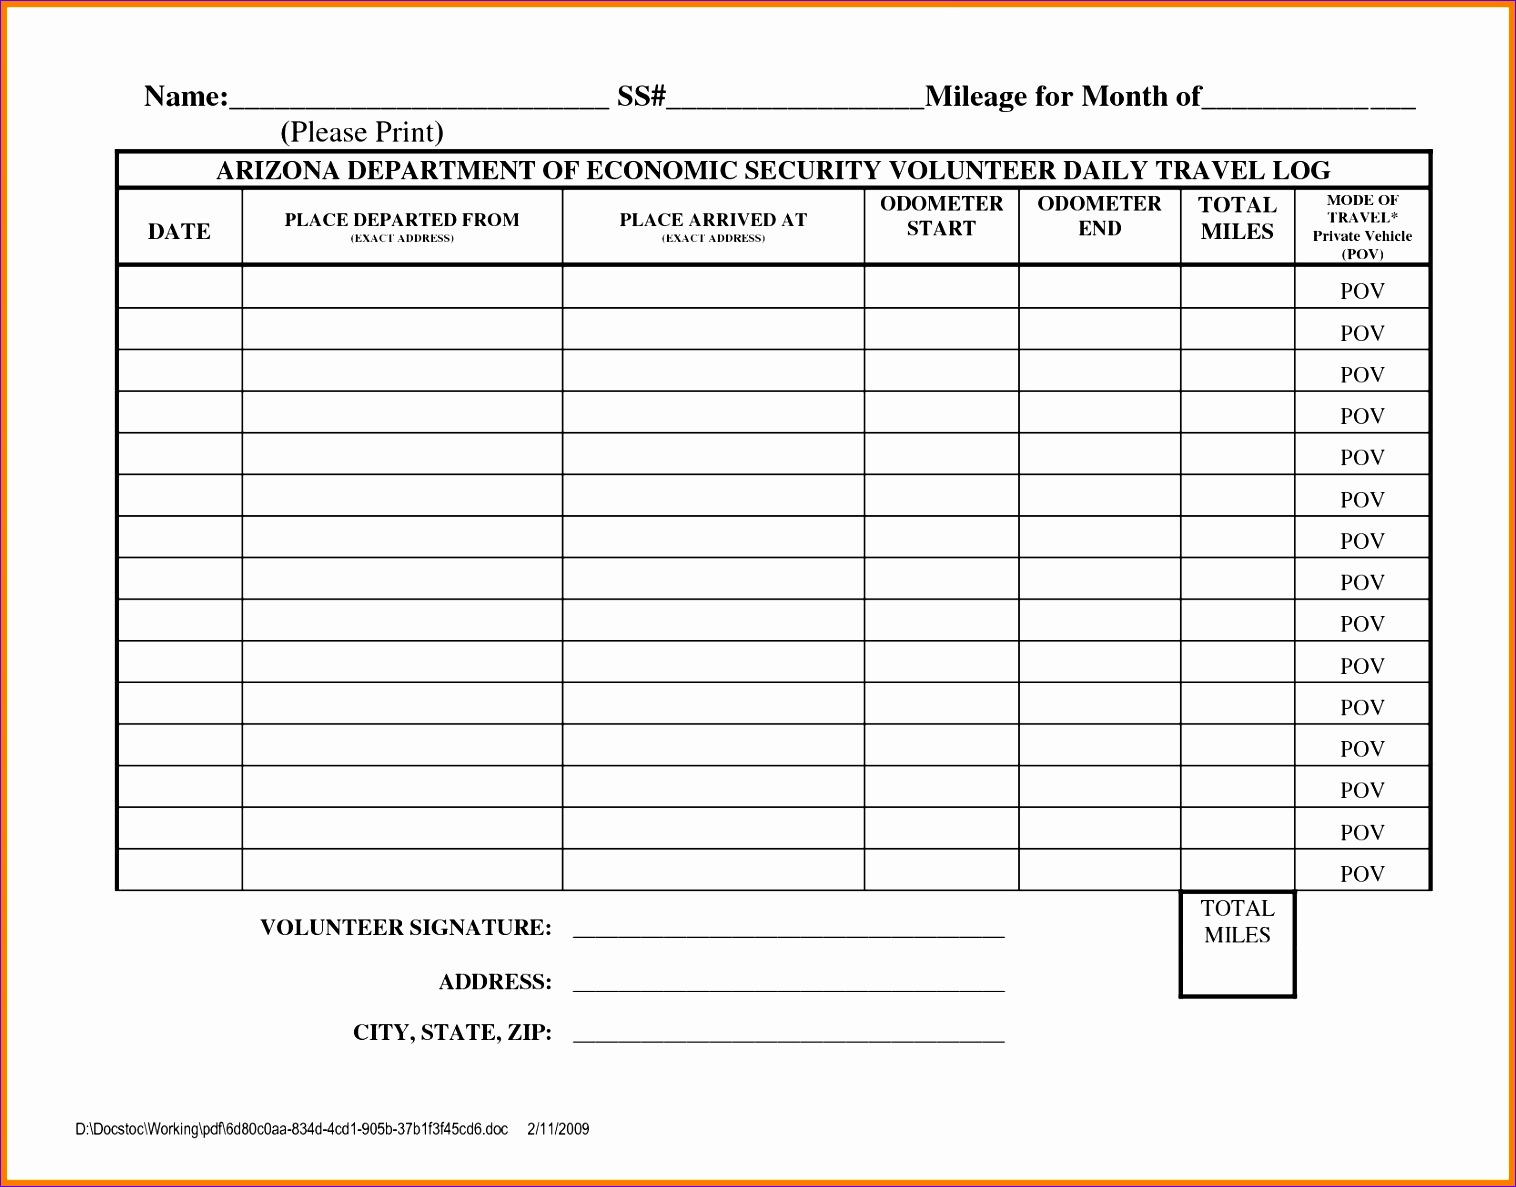 mileage reimbursement form template 15161187